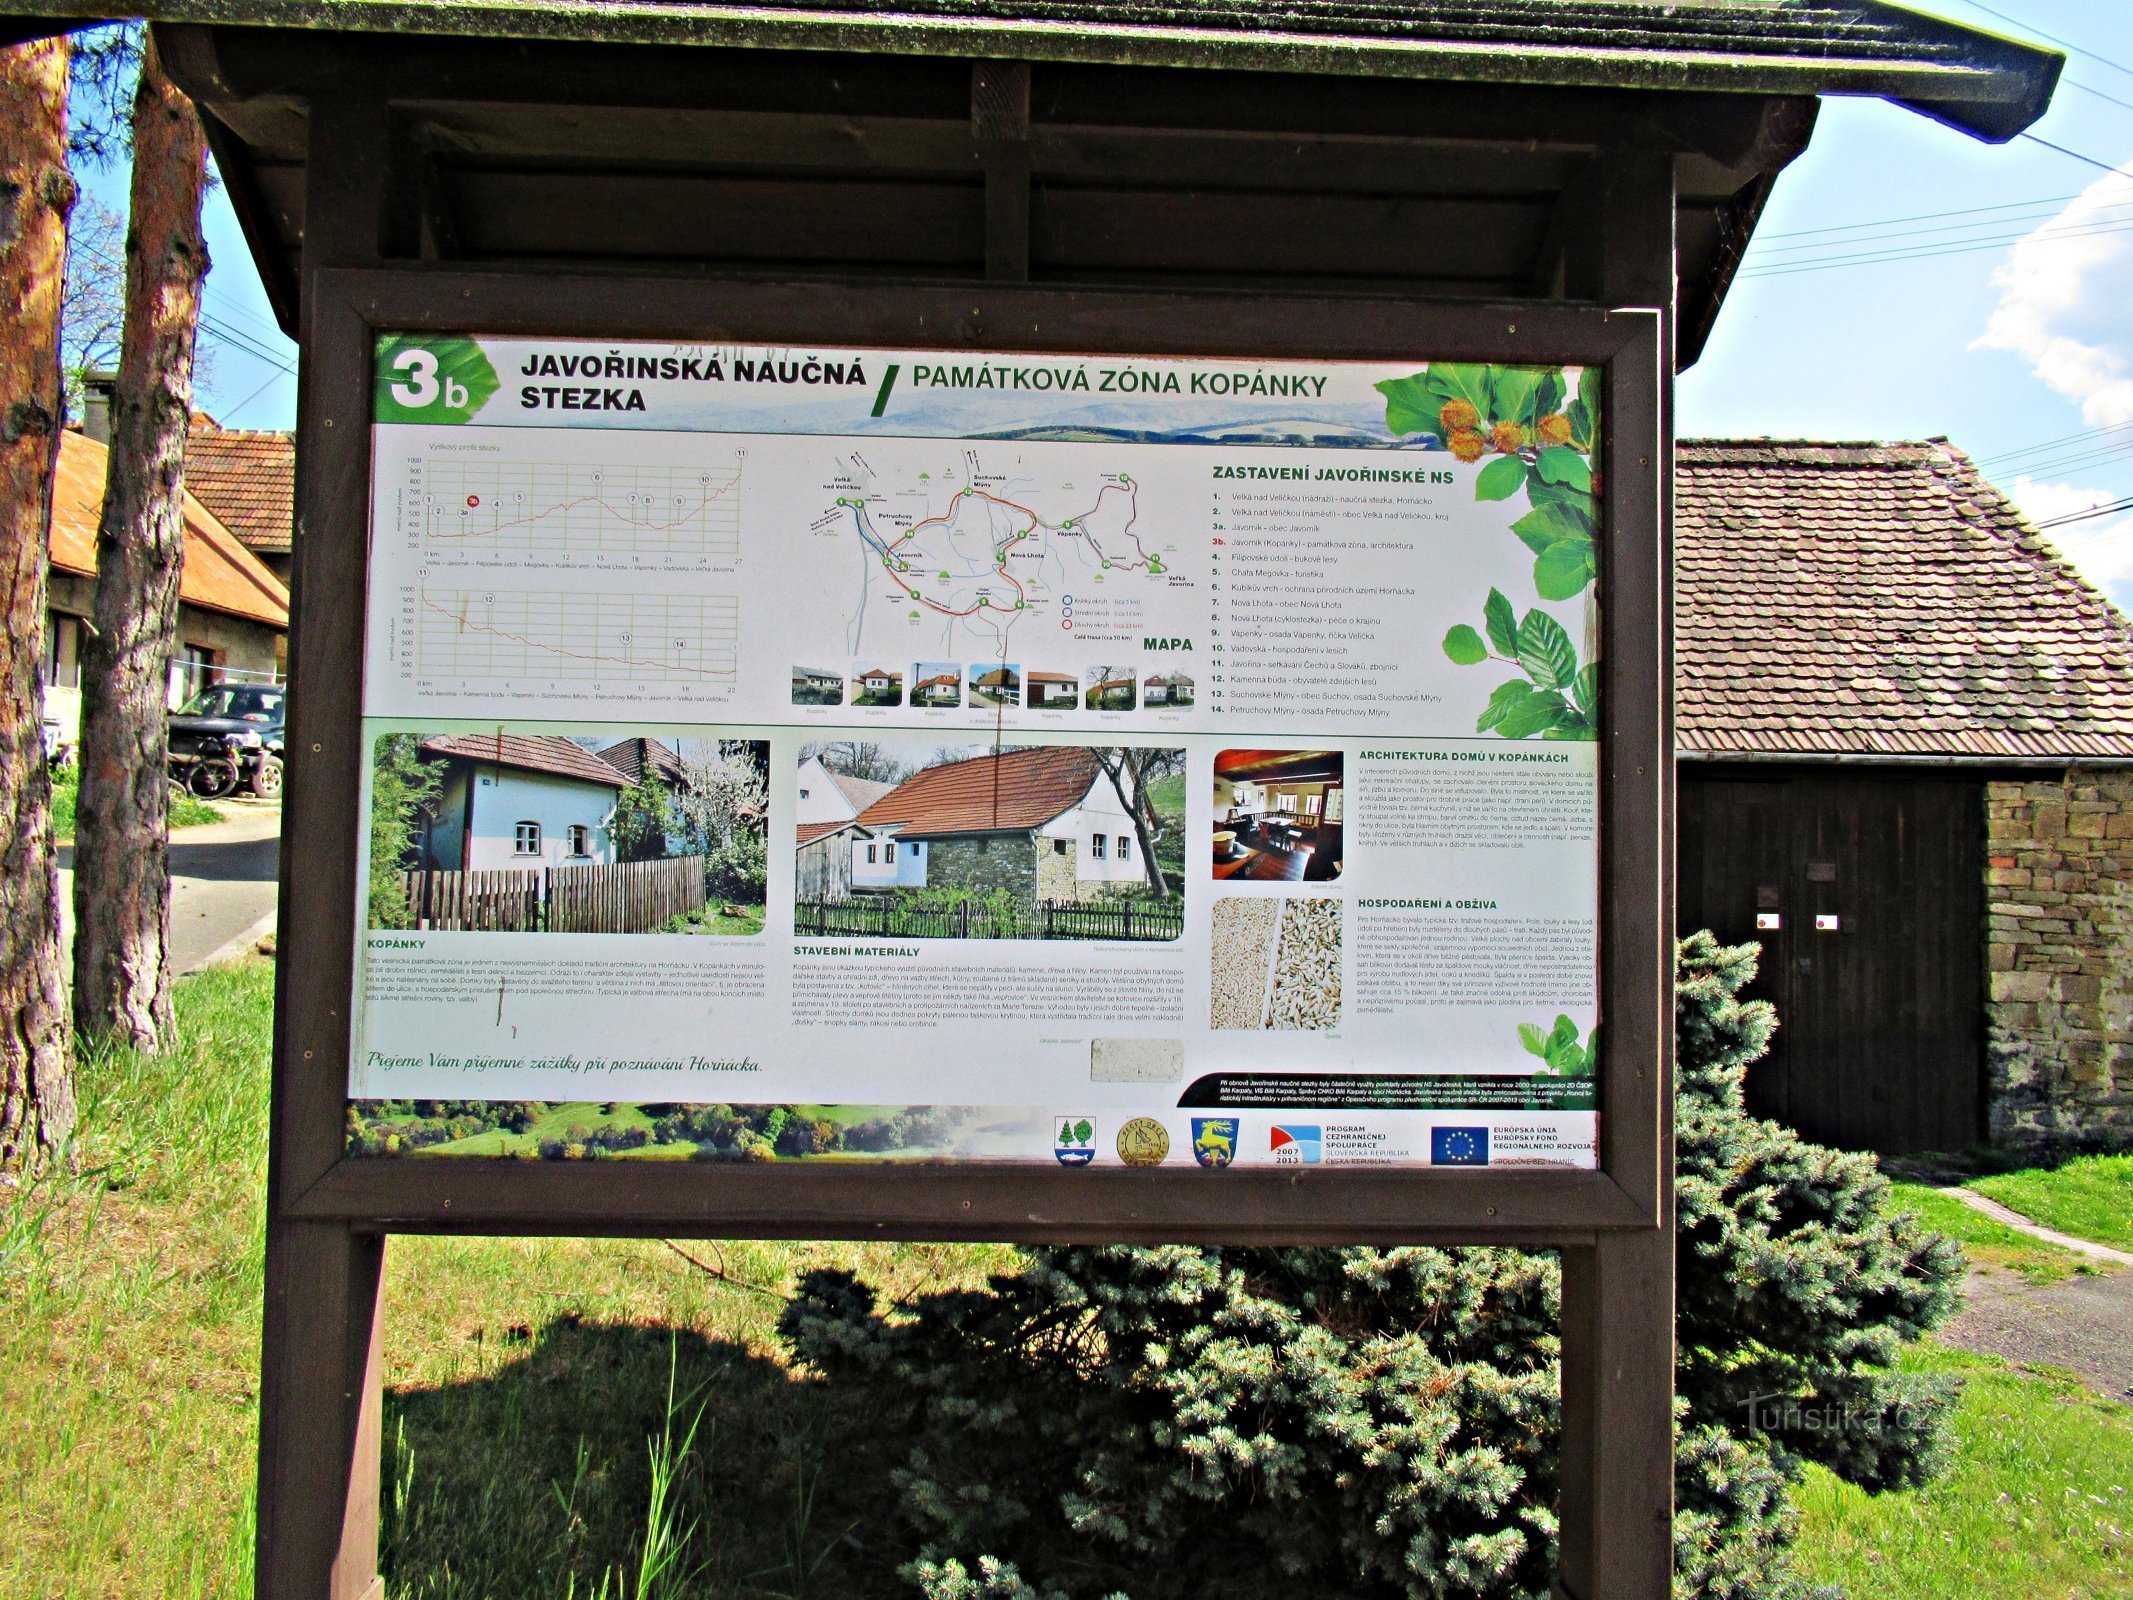 Javorník falu, festői házak a környéken - Kopanky Javorník faluban Szlováckóban